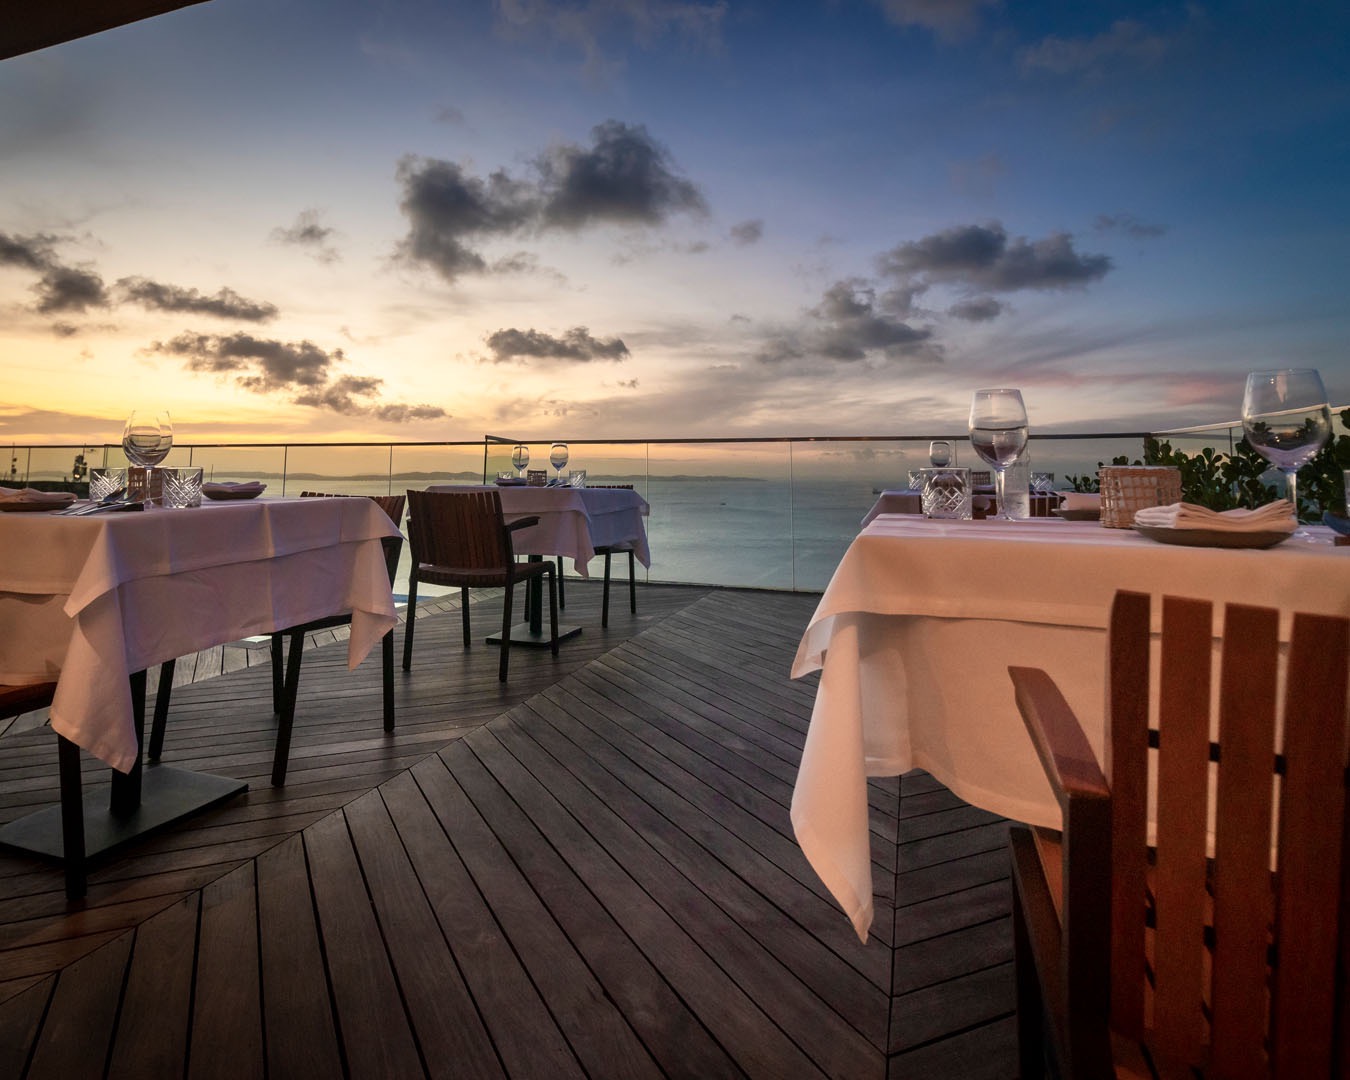 Fera Palace Hotel anuncia pacote romântico e jantar especial para Dia dos Namorados em Salvador 